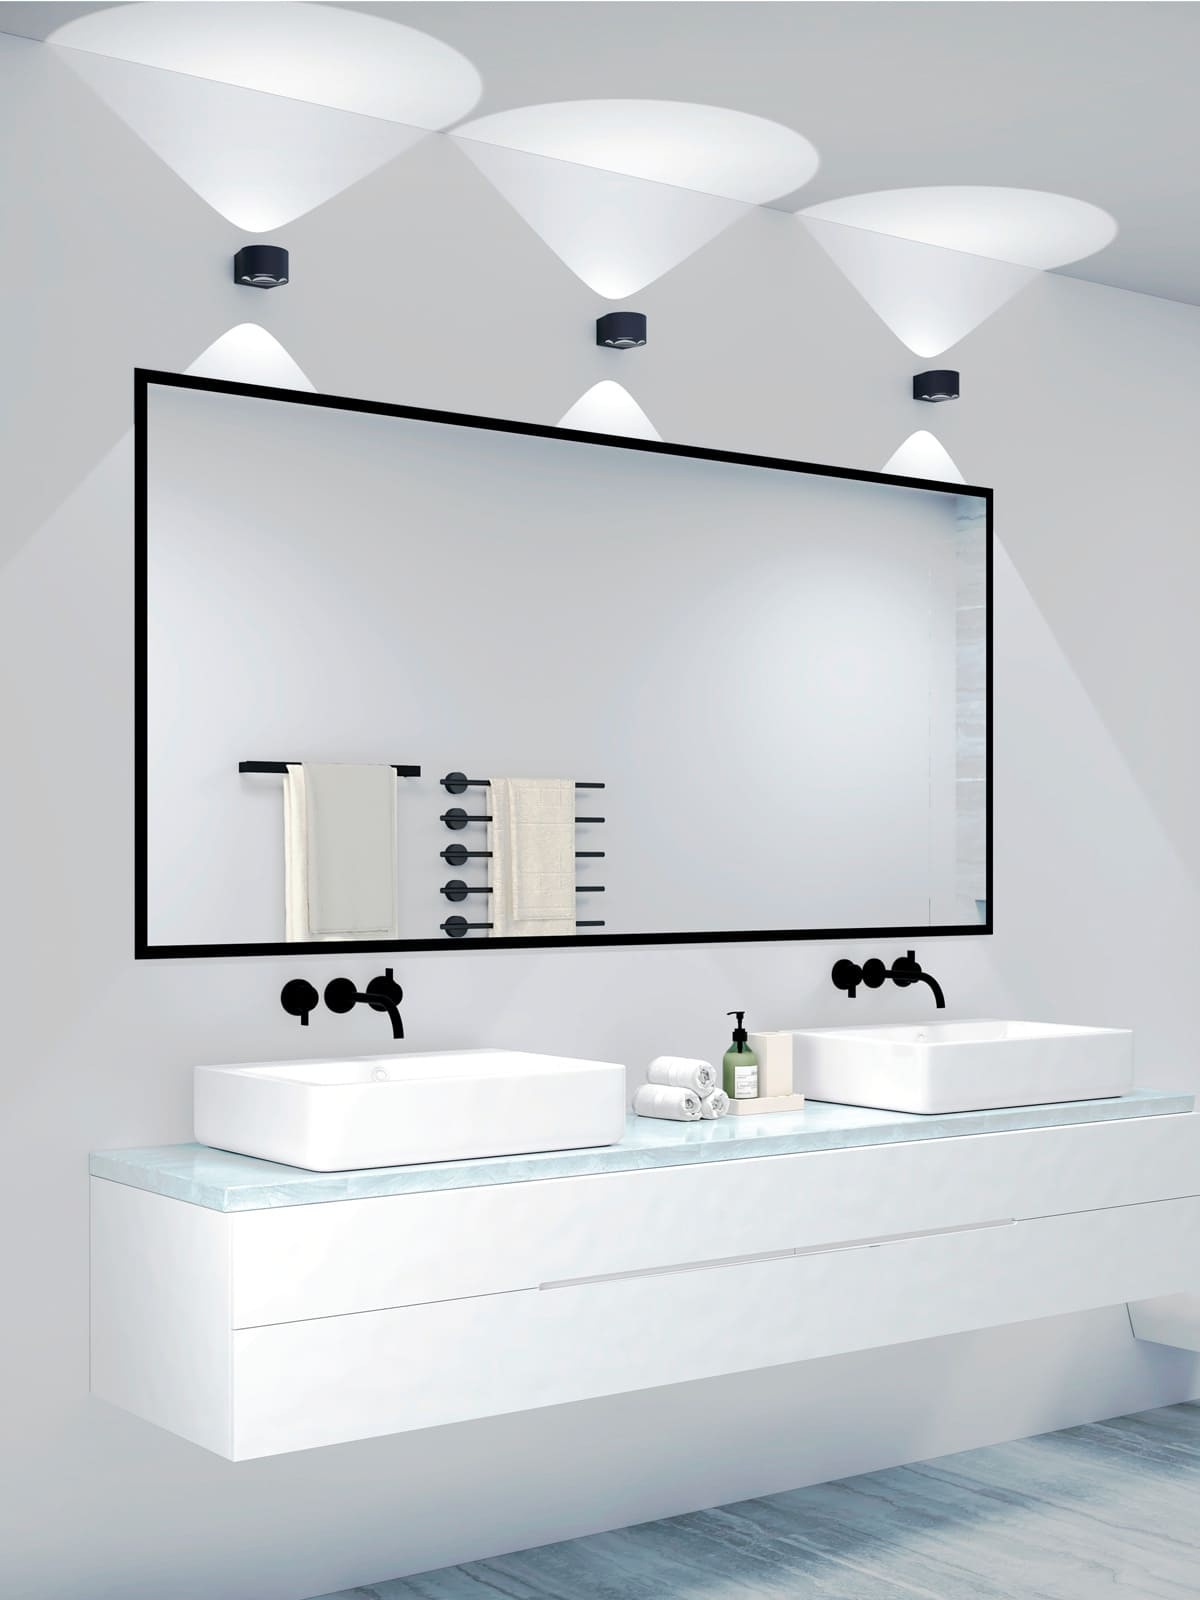 Frey Ip65 Wandleuchte | Designort Premium Designerleuchten with regard to Badezimmer Lampen Wand